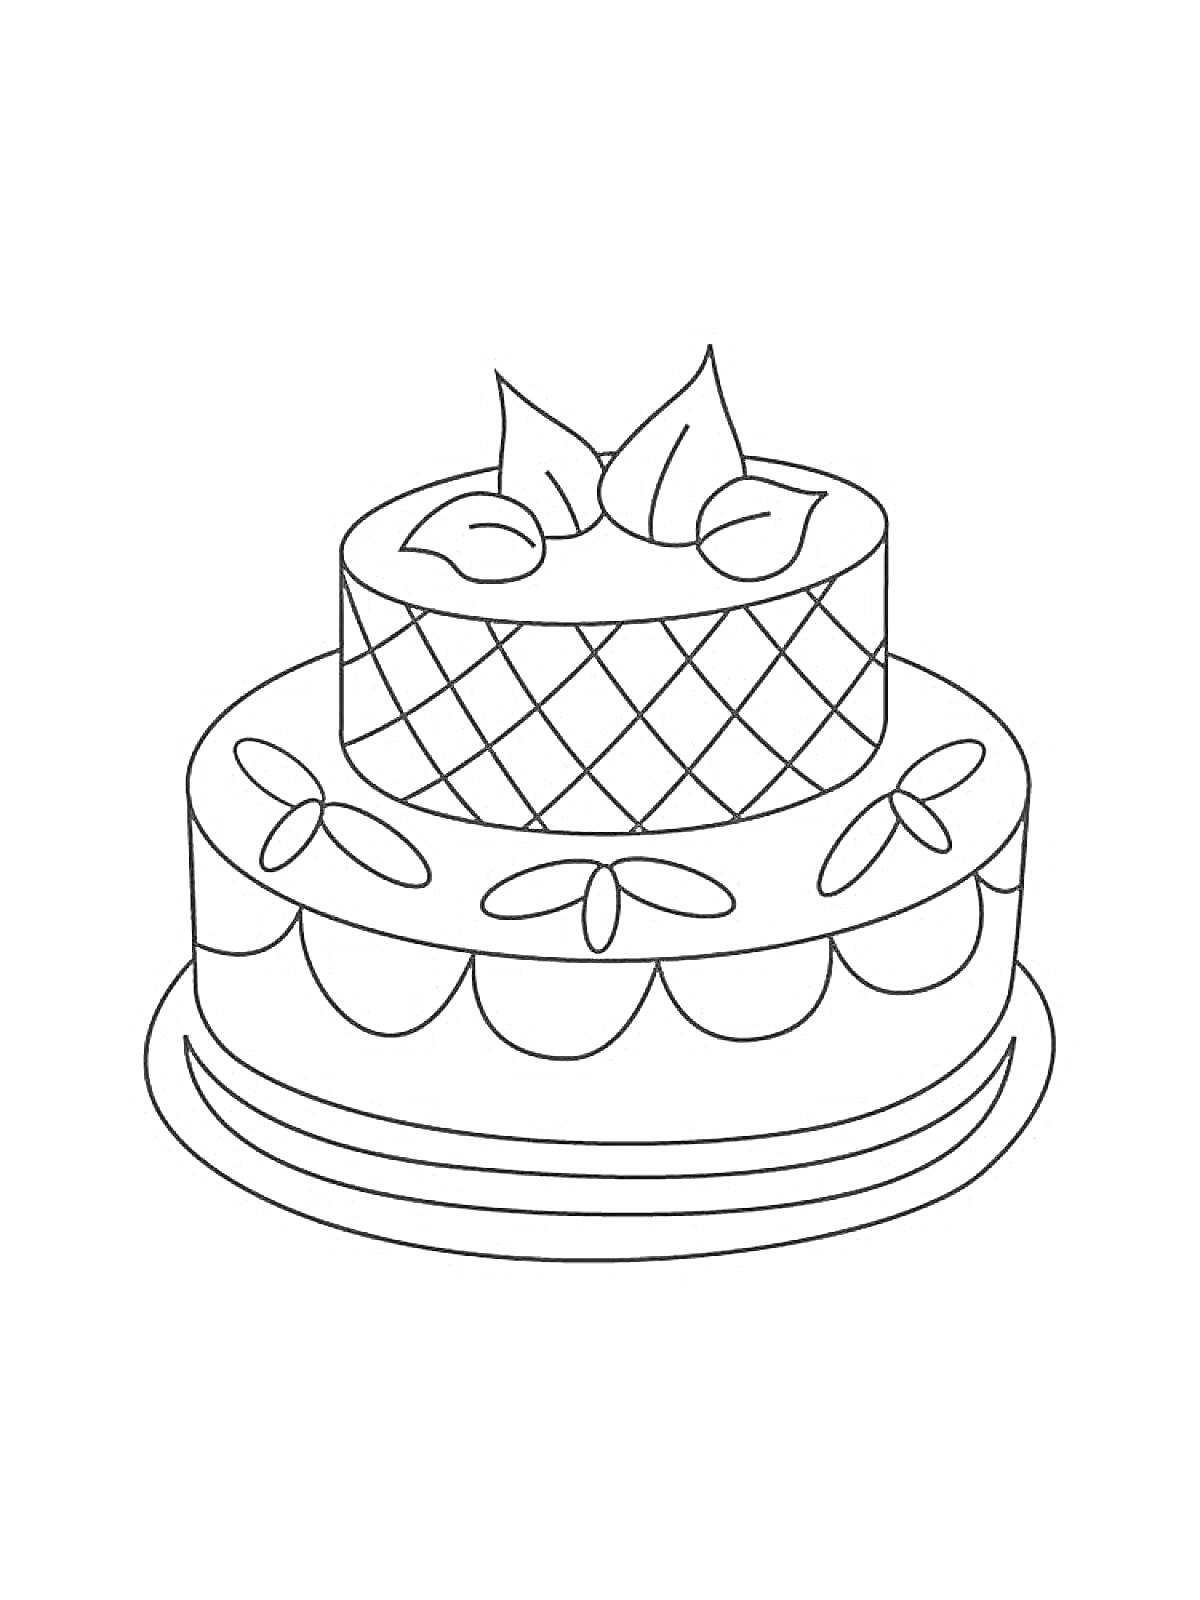 Раскраска Двухъярусный торт с рисунками, листьями и ягодами